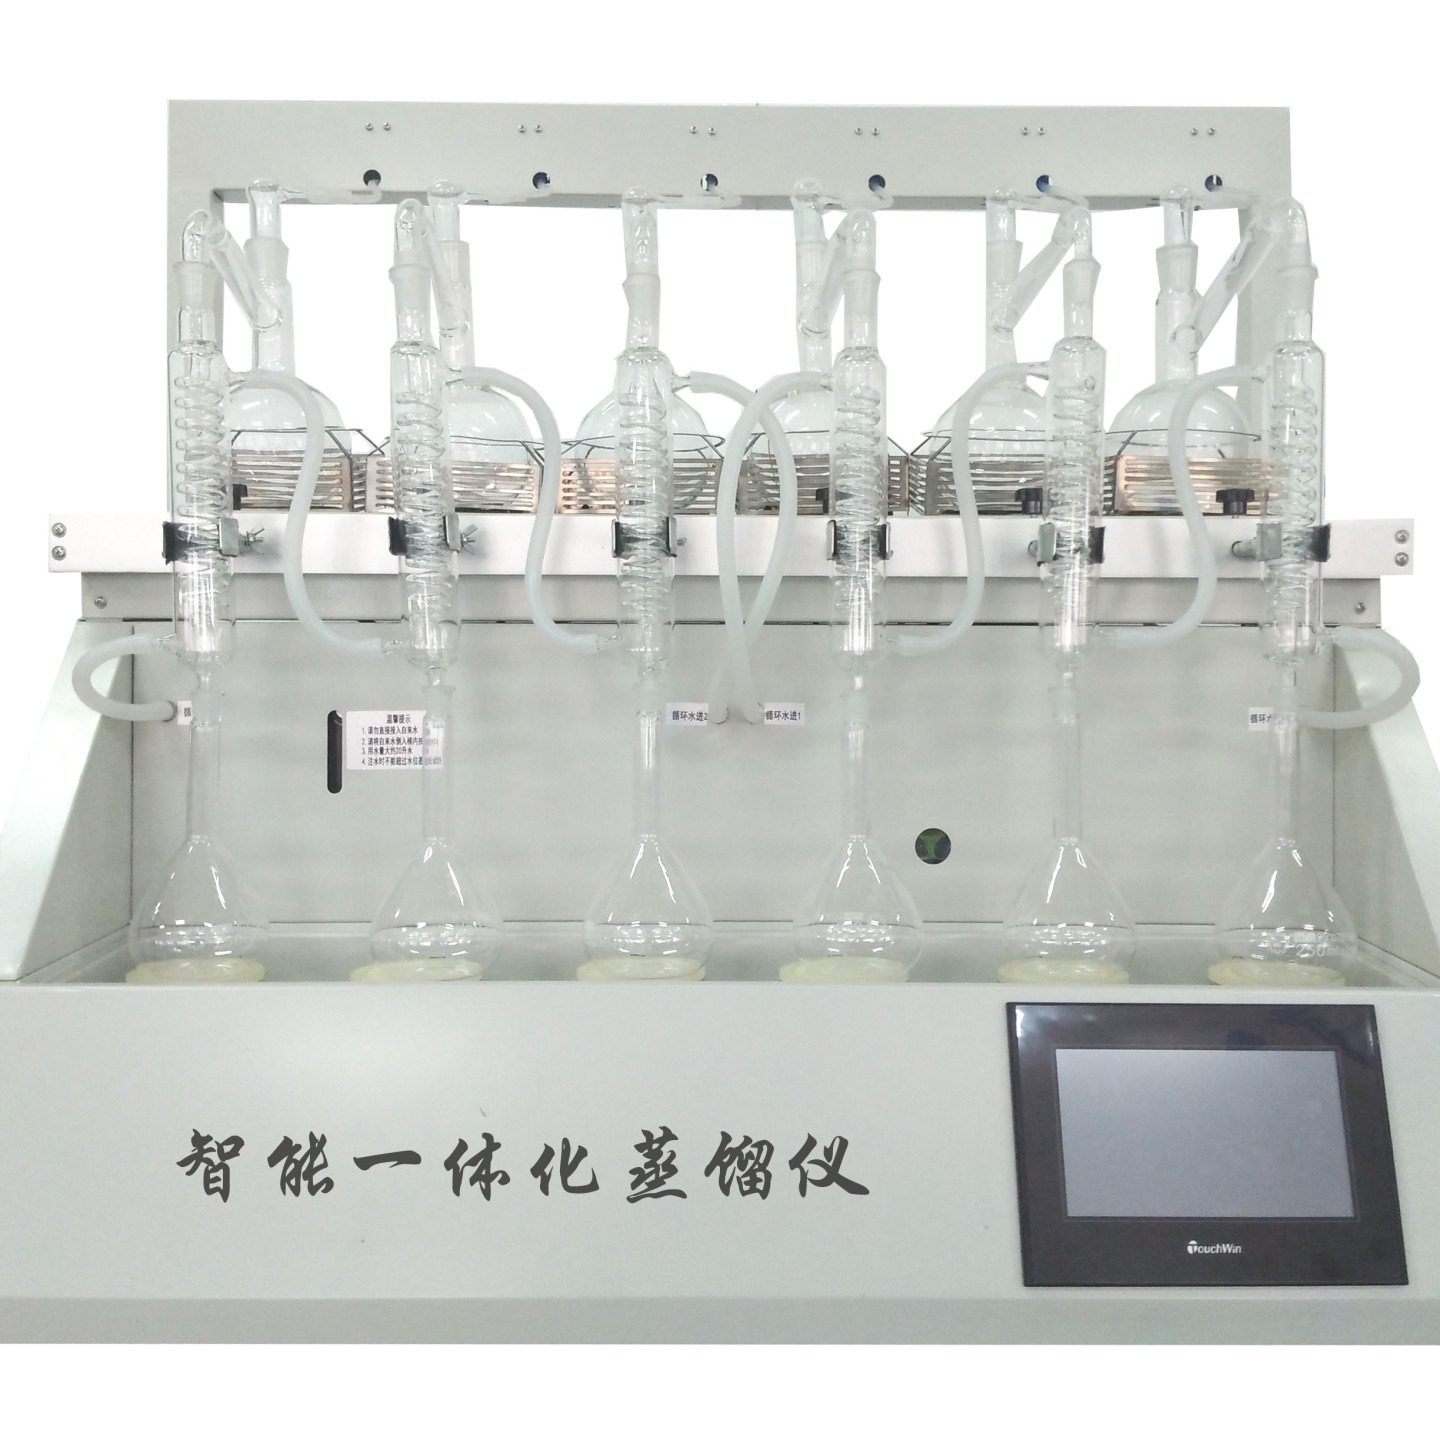 二甲苯一体化蒸馏仪CYZL-6 万用一体化蒸馏仪 通用蒸馏仪图片